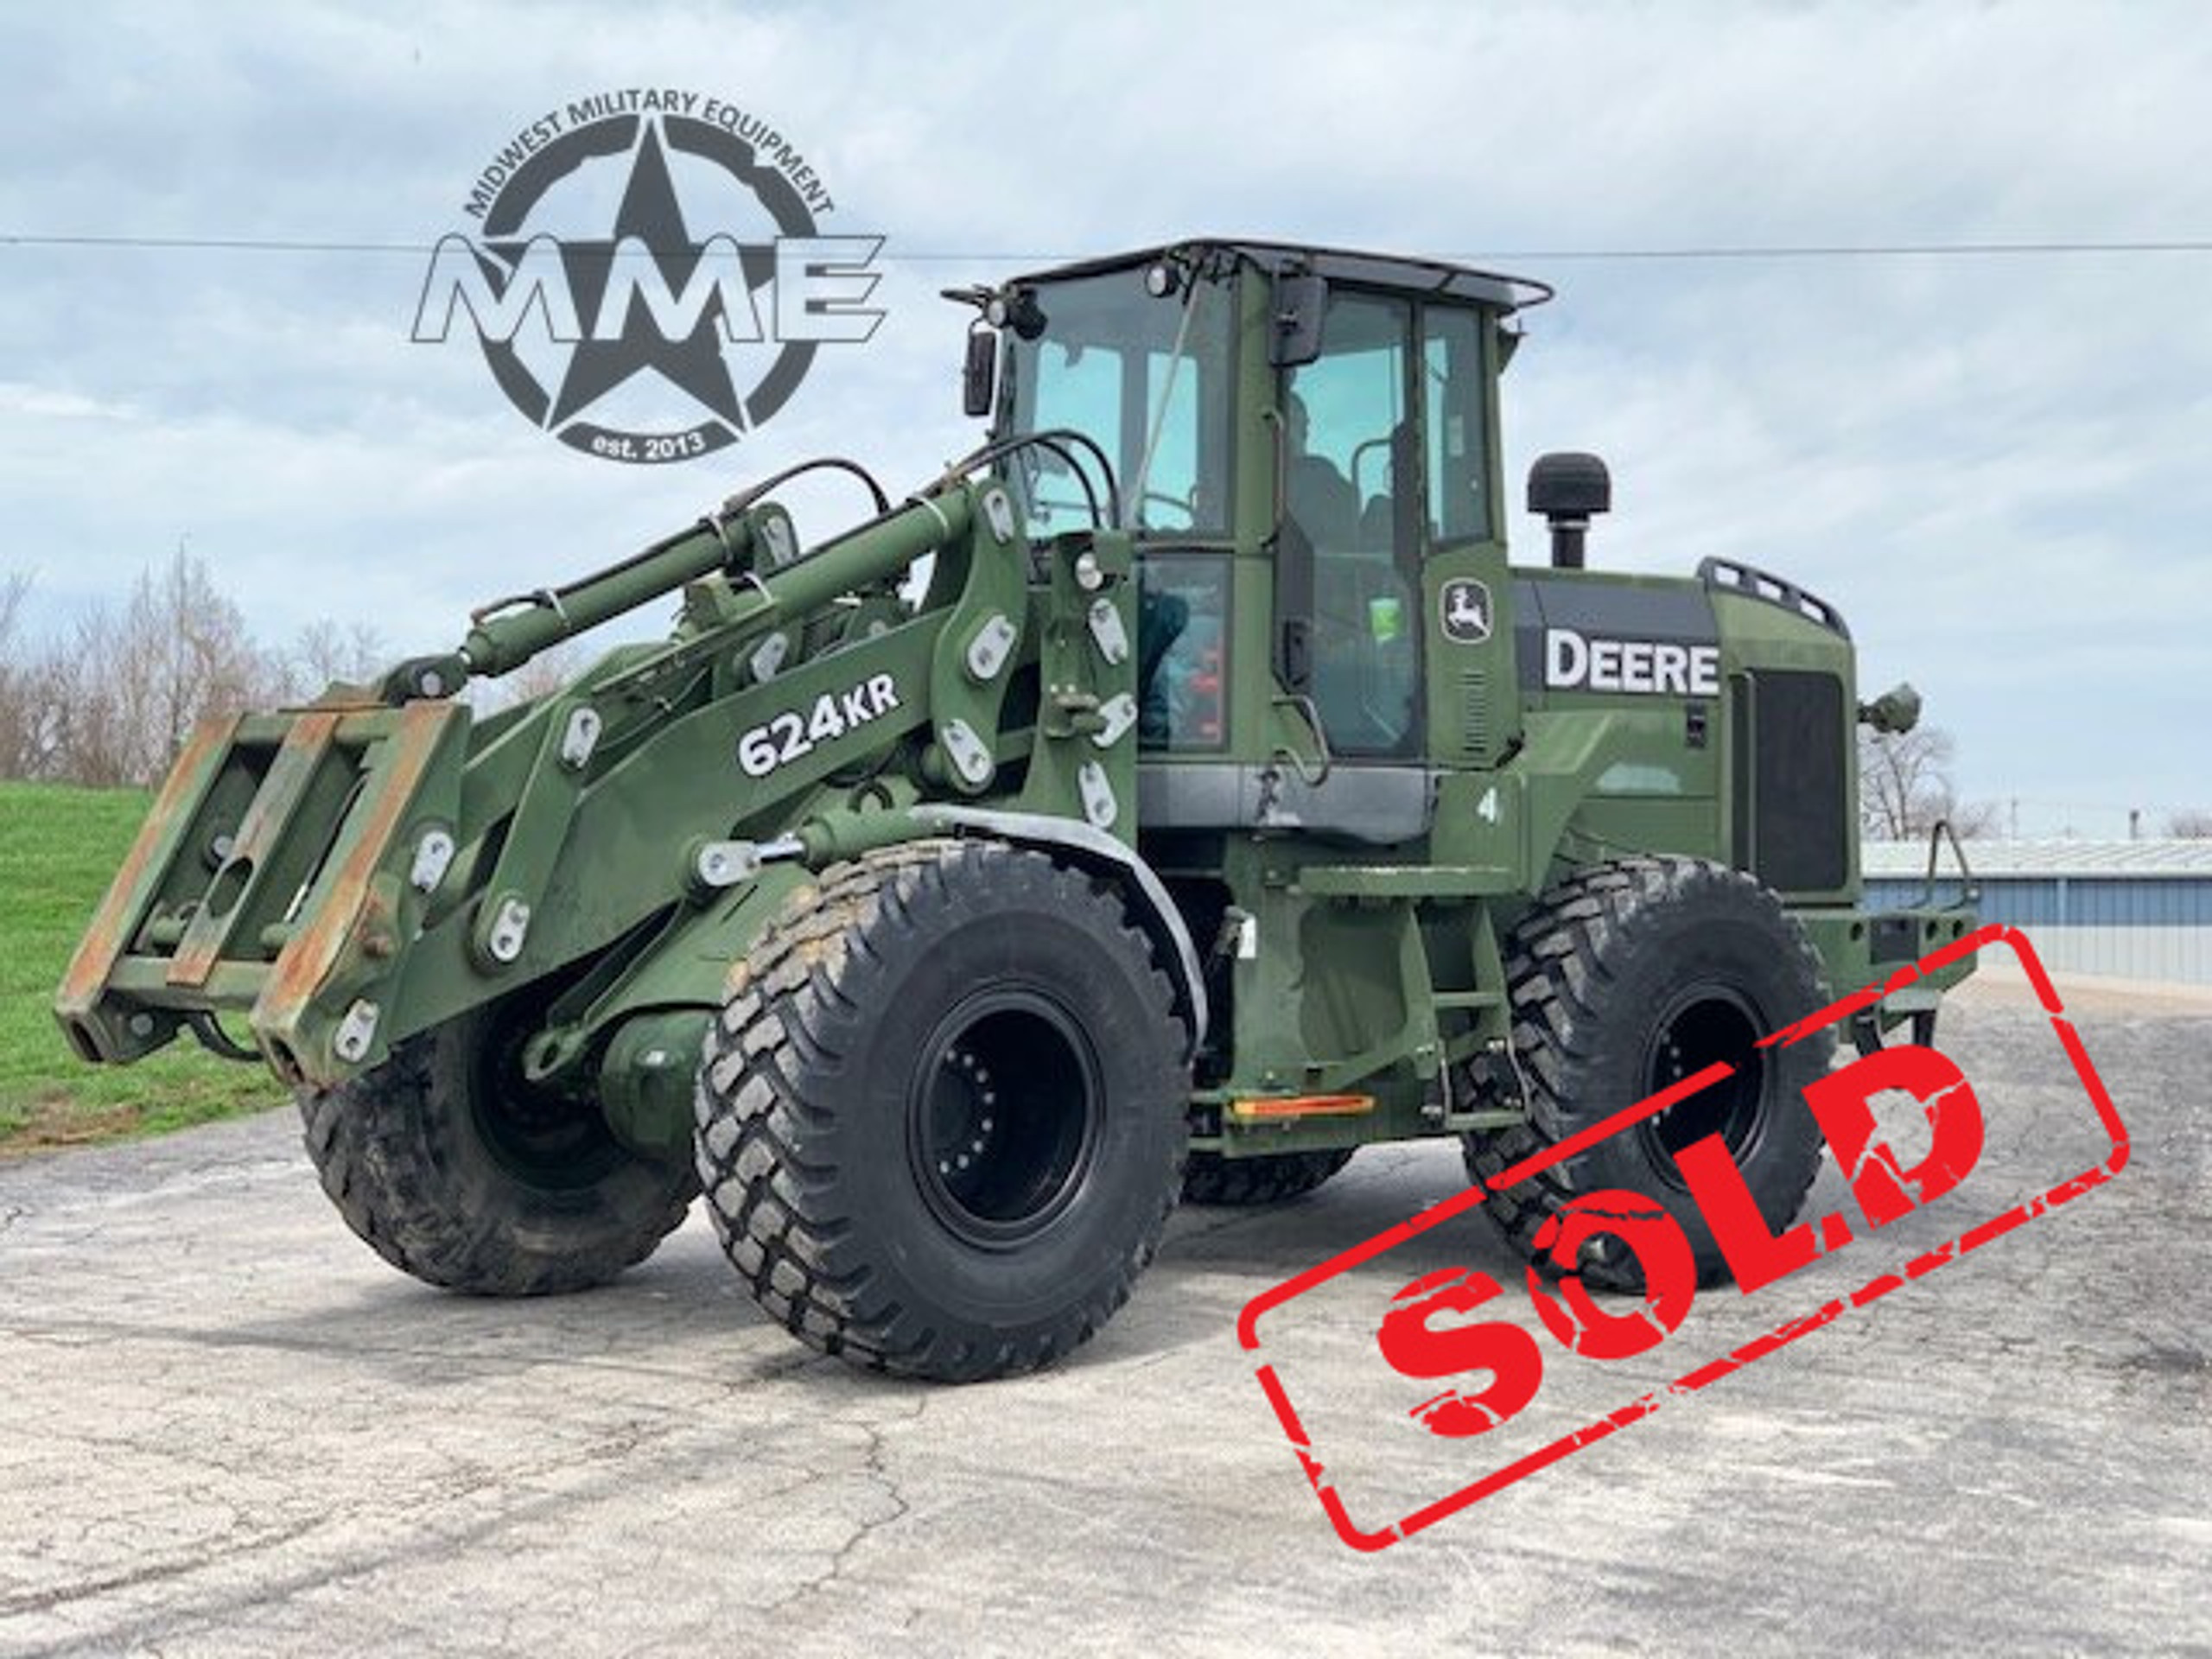 Acs Tram 644er Wheel Loader Forks For 624kr Midwest Military Equipment